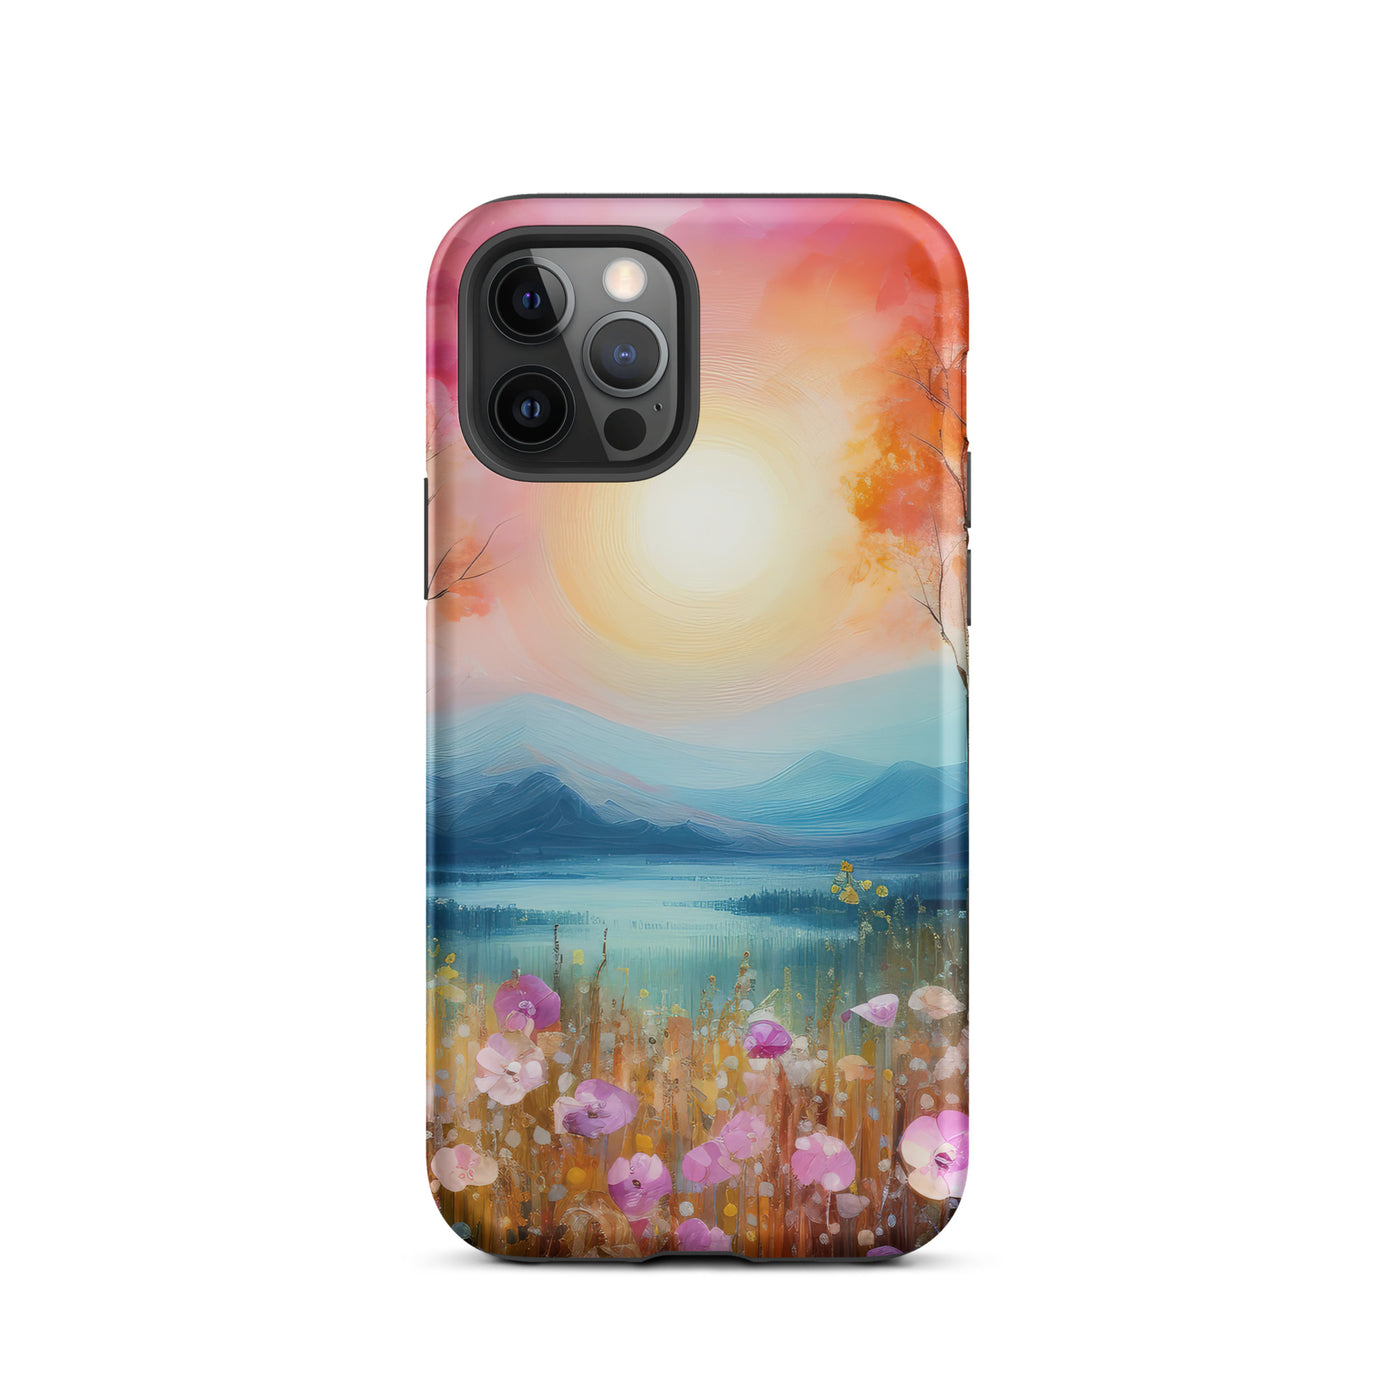 Berge, See, pinke Bäume und Blumen - Malerei - iPhone Schutzhülle (robust) berge xxx iPhone 12 Pro